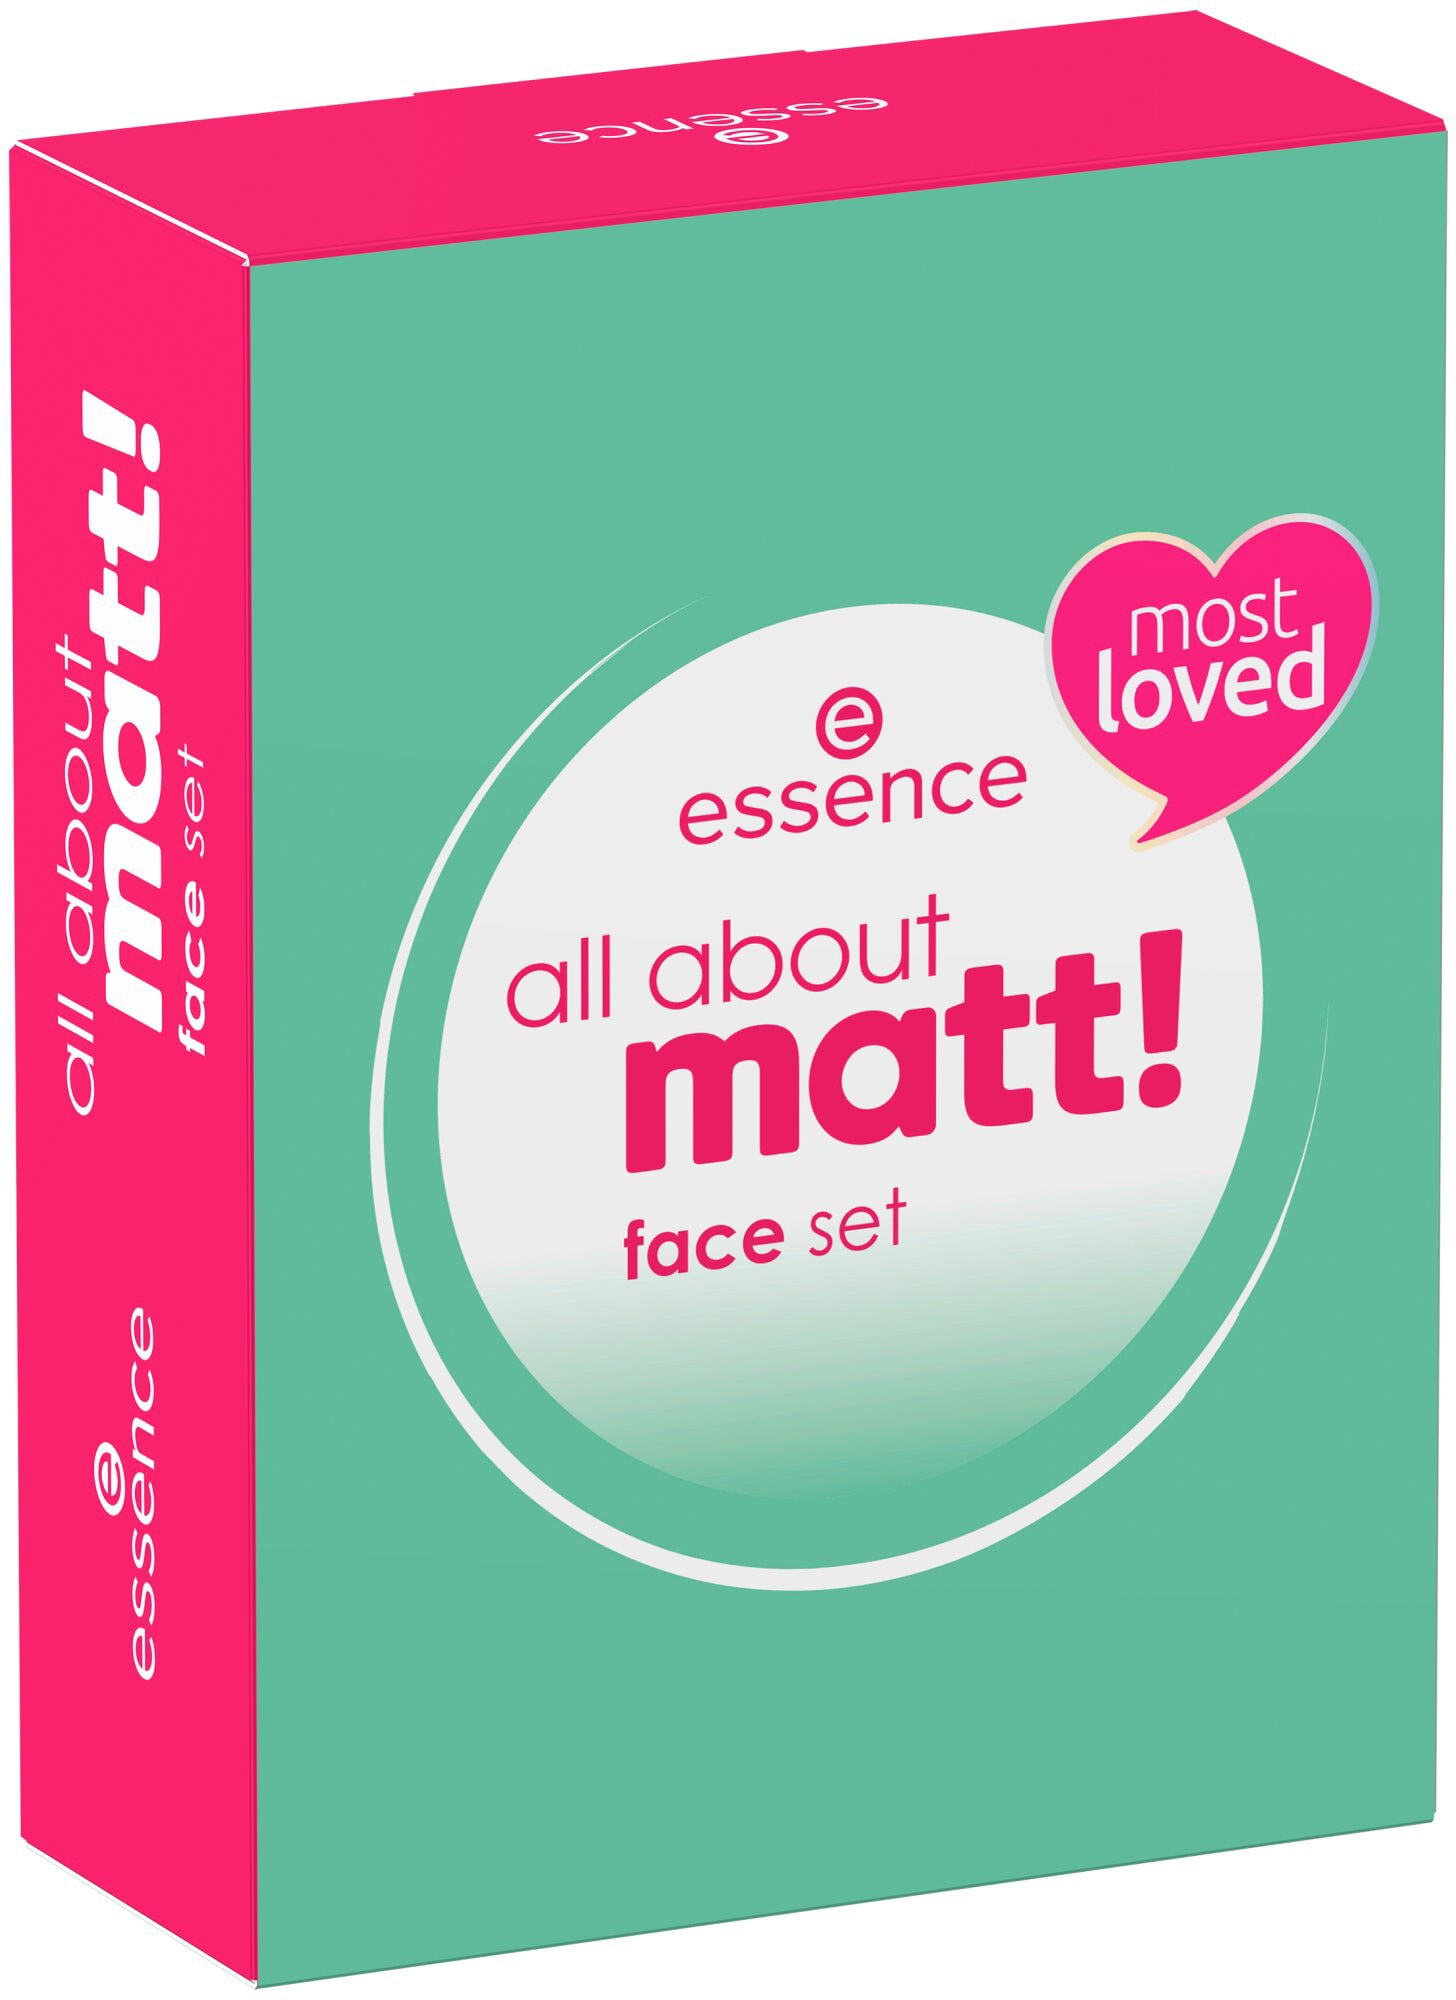 3 set«, Essence face Set about »all tlg.) matt! bestellen (Set, Make-up | UNIVERSAL